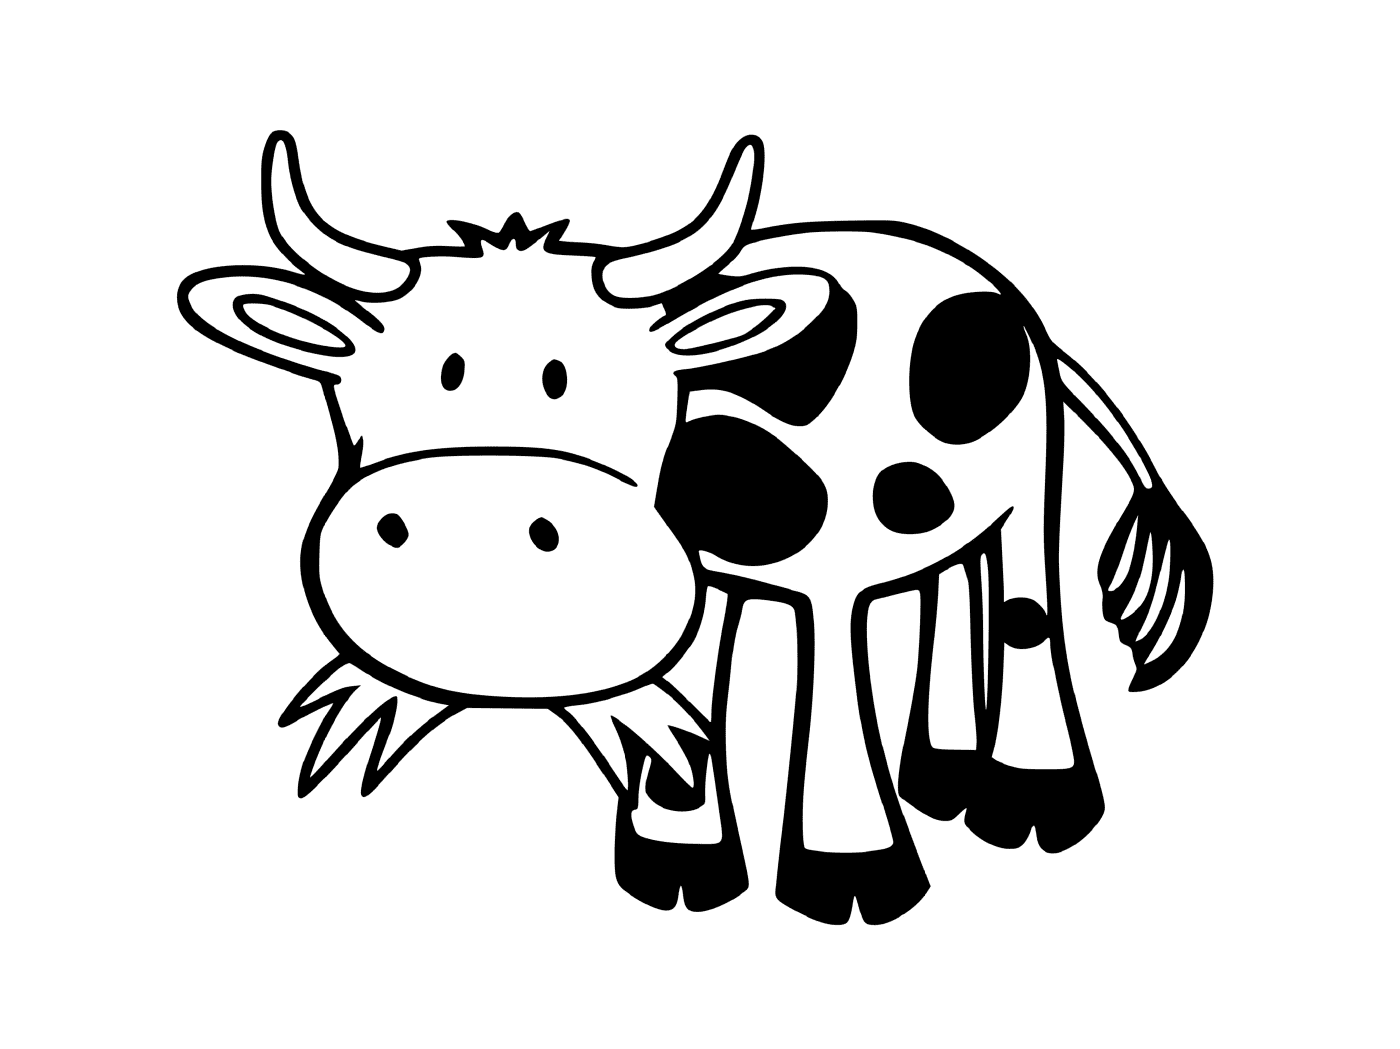  Корова ест траву 